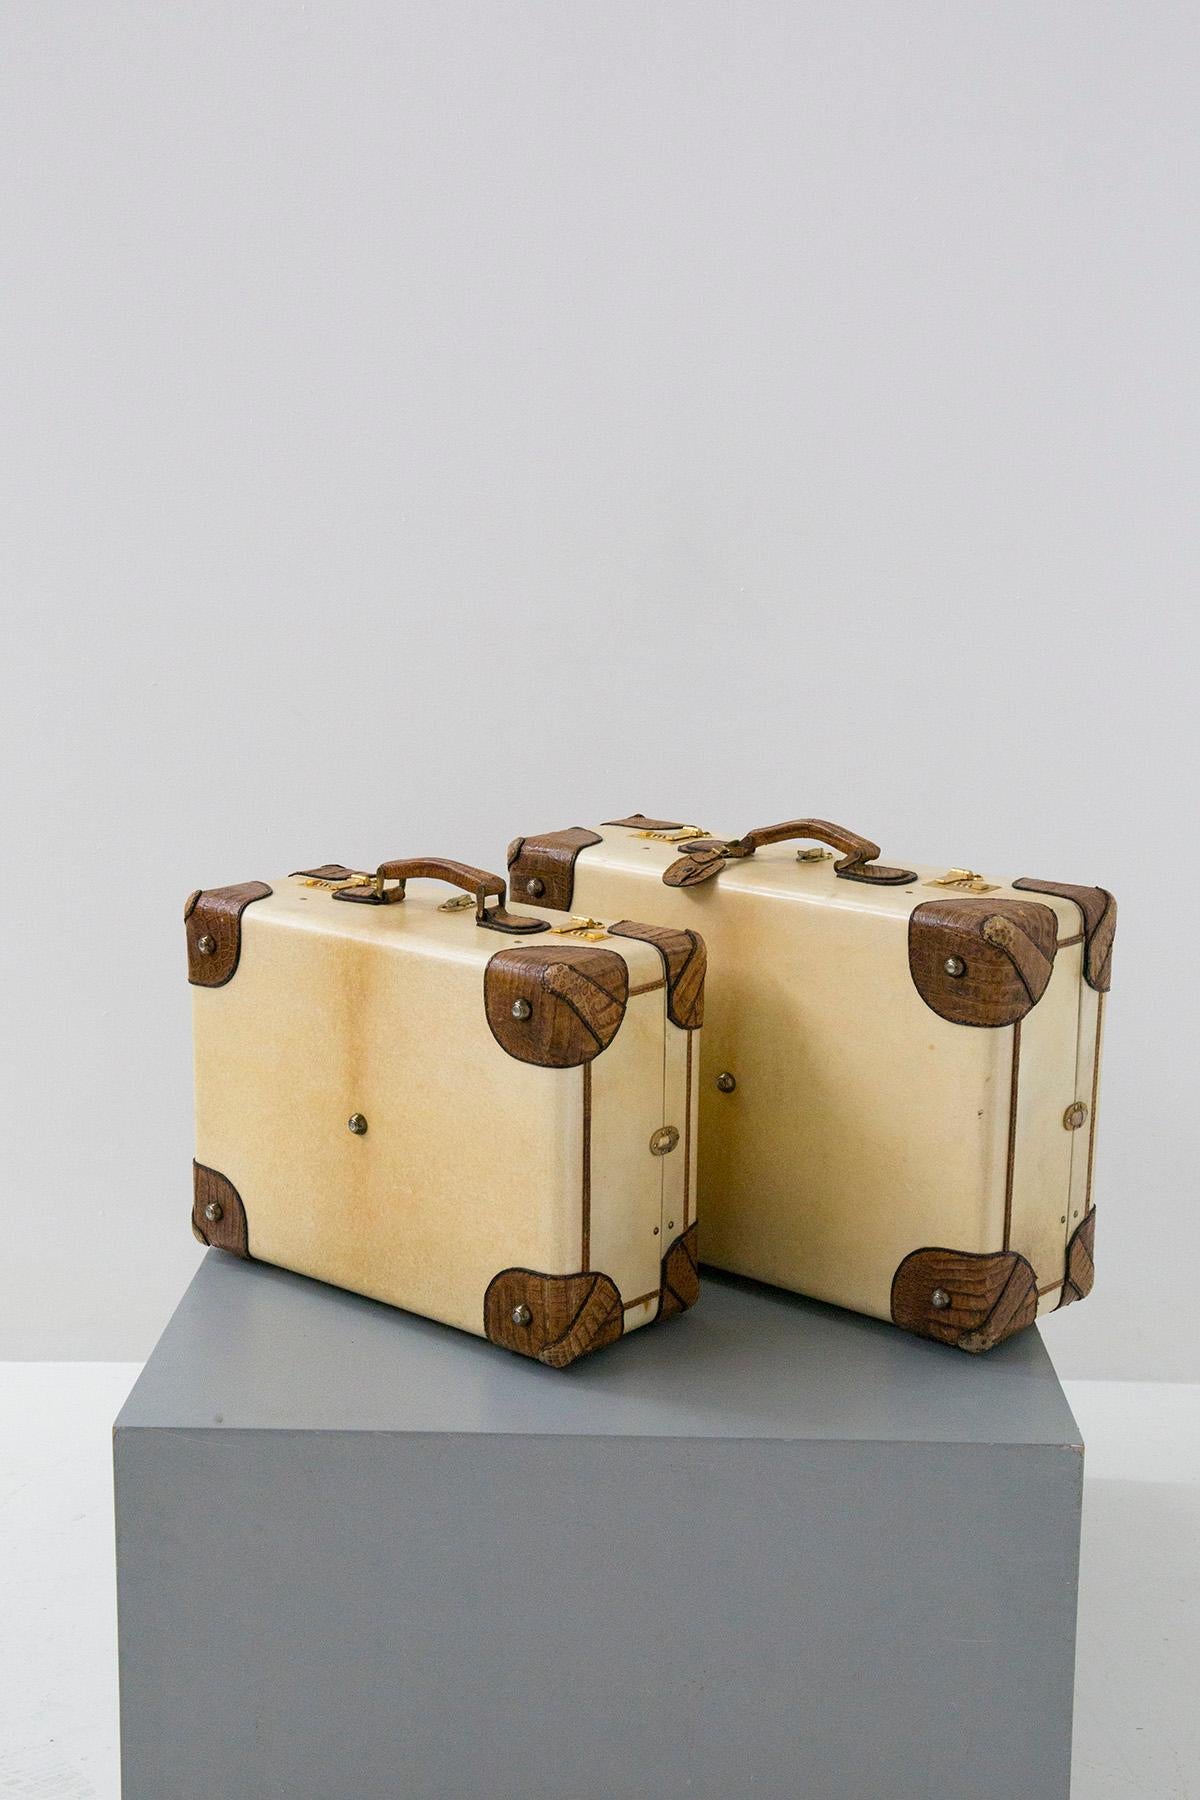 Elegantes und prächtiges Kofferpaar aus Pergament und Krokodil aus der großen Chloé-Manufaktur. Die Koffer stammen aus den späten 1950er Jahren. Die beiden Koffer haben einen festen Rahmen, der mit gelbem Pergament überzogen ist, und ihre größte